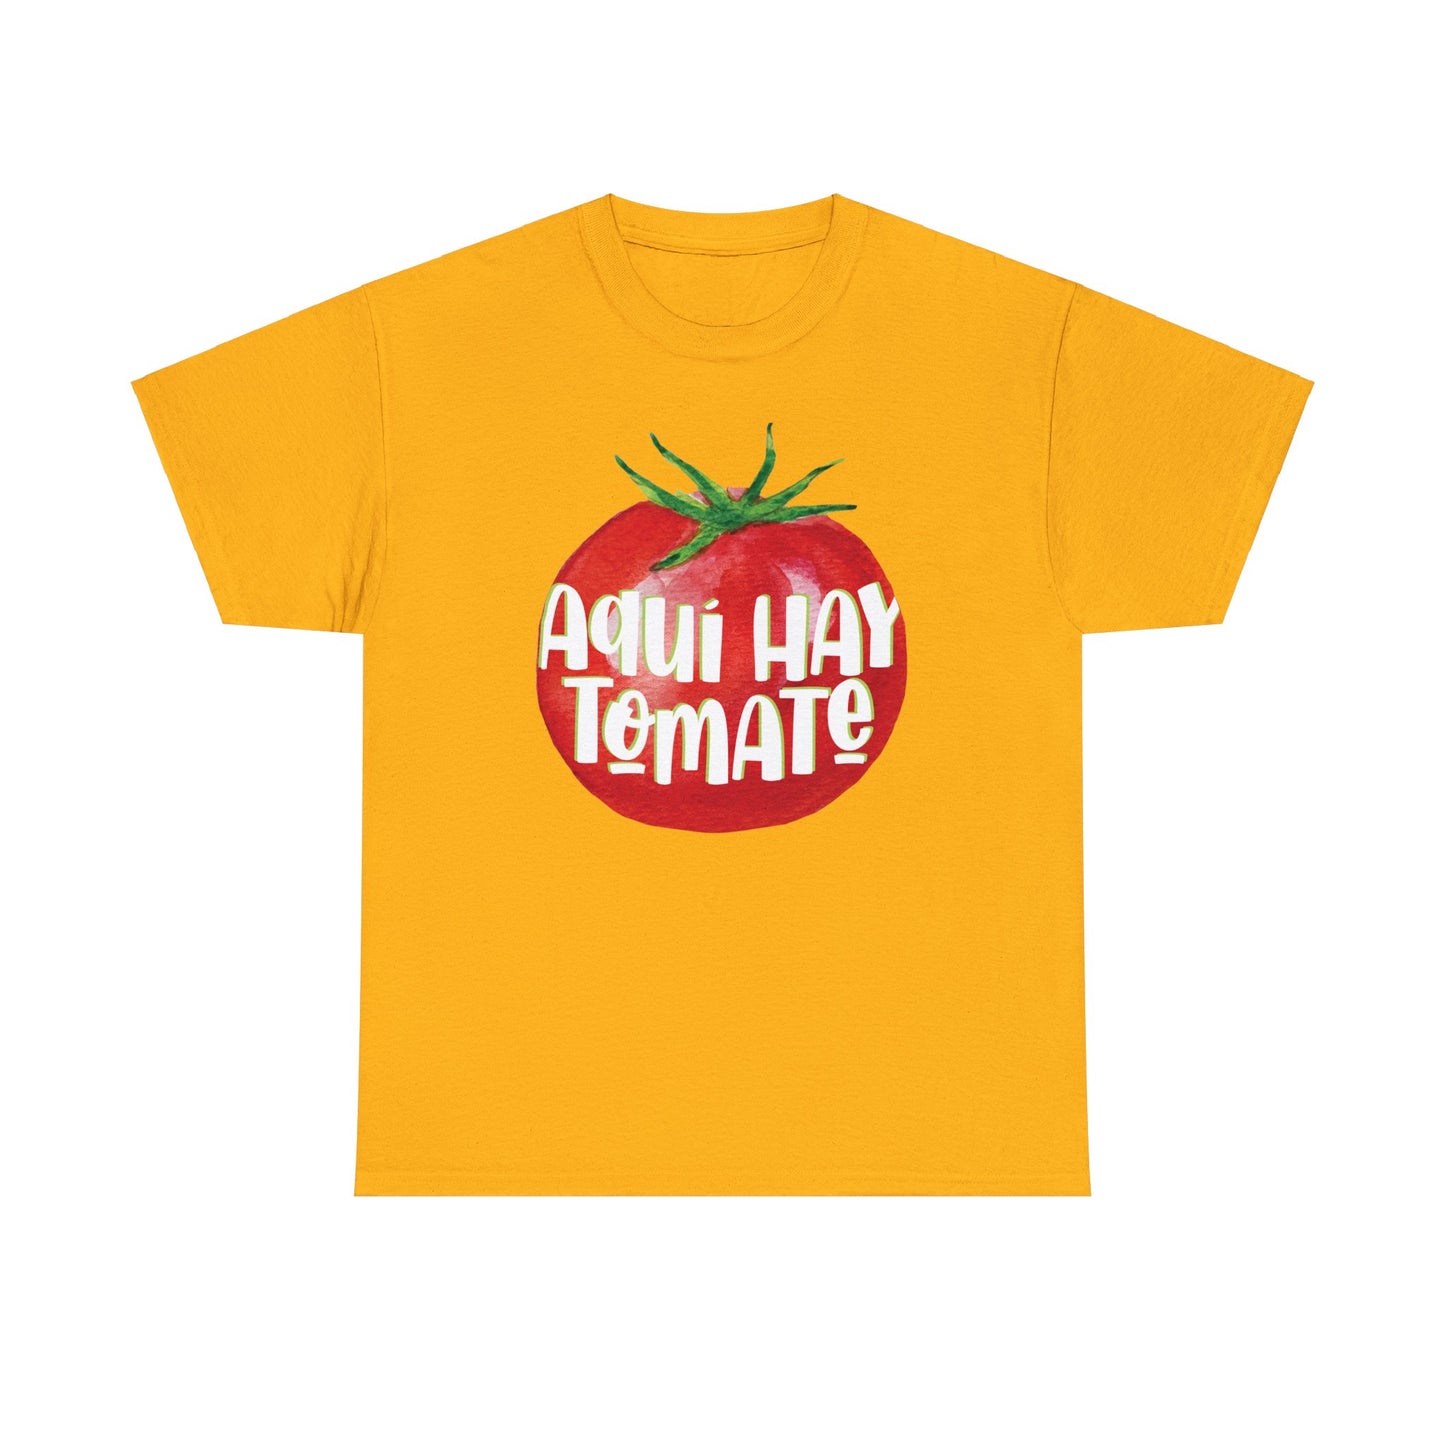 Aquí hay tomate - Camiseta de algodón - Unisex Heavy Cotton Tee